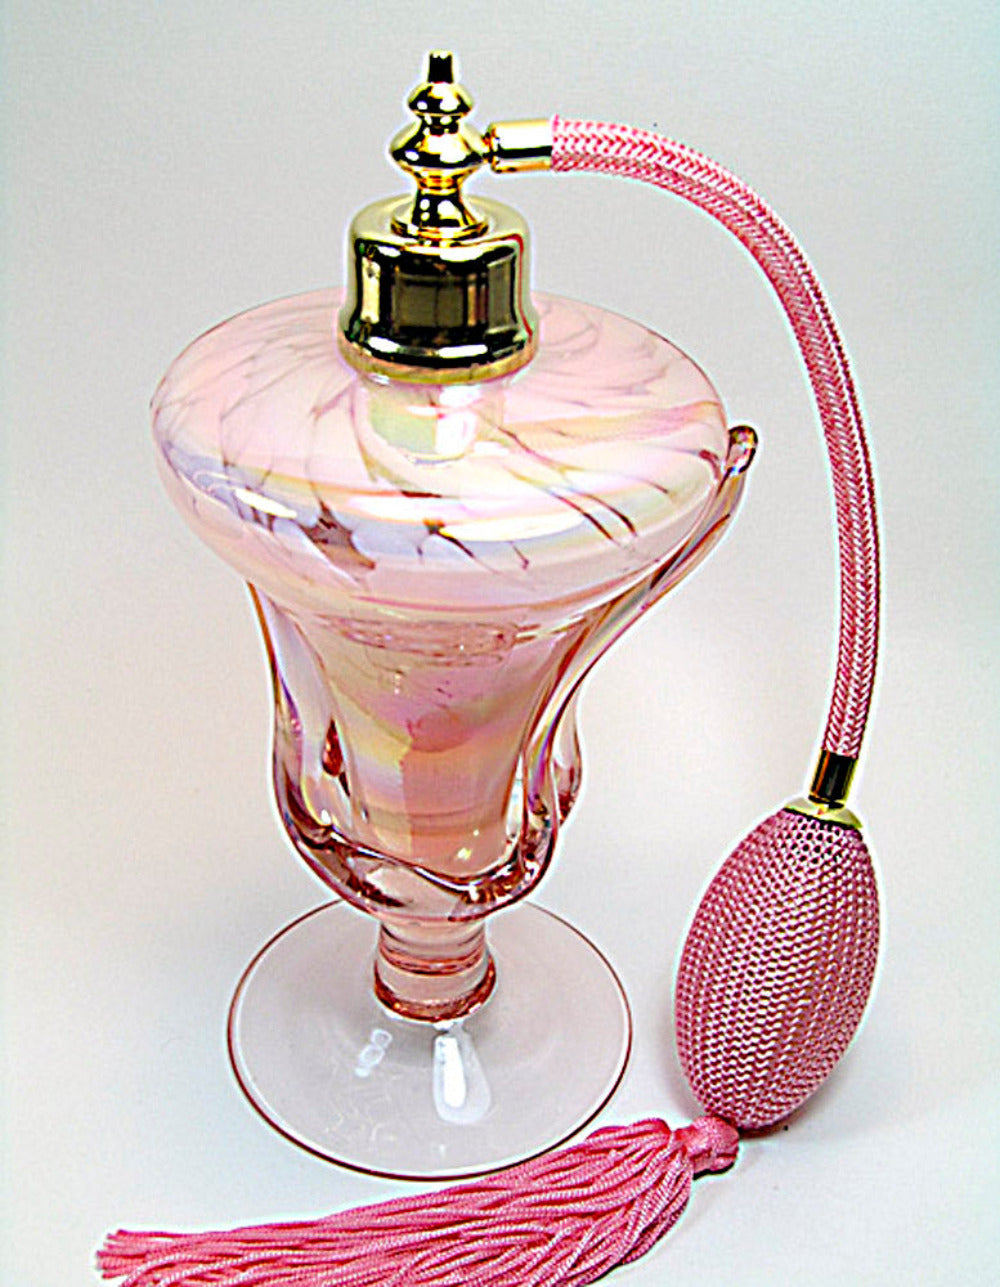 Art perfume bottle